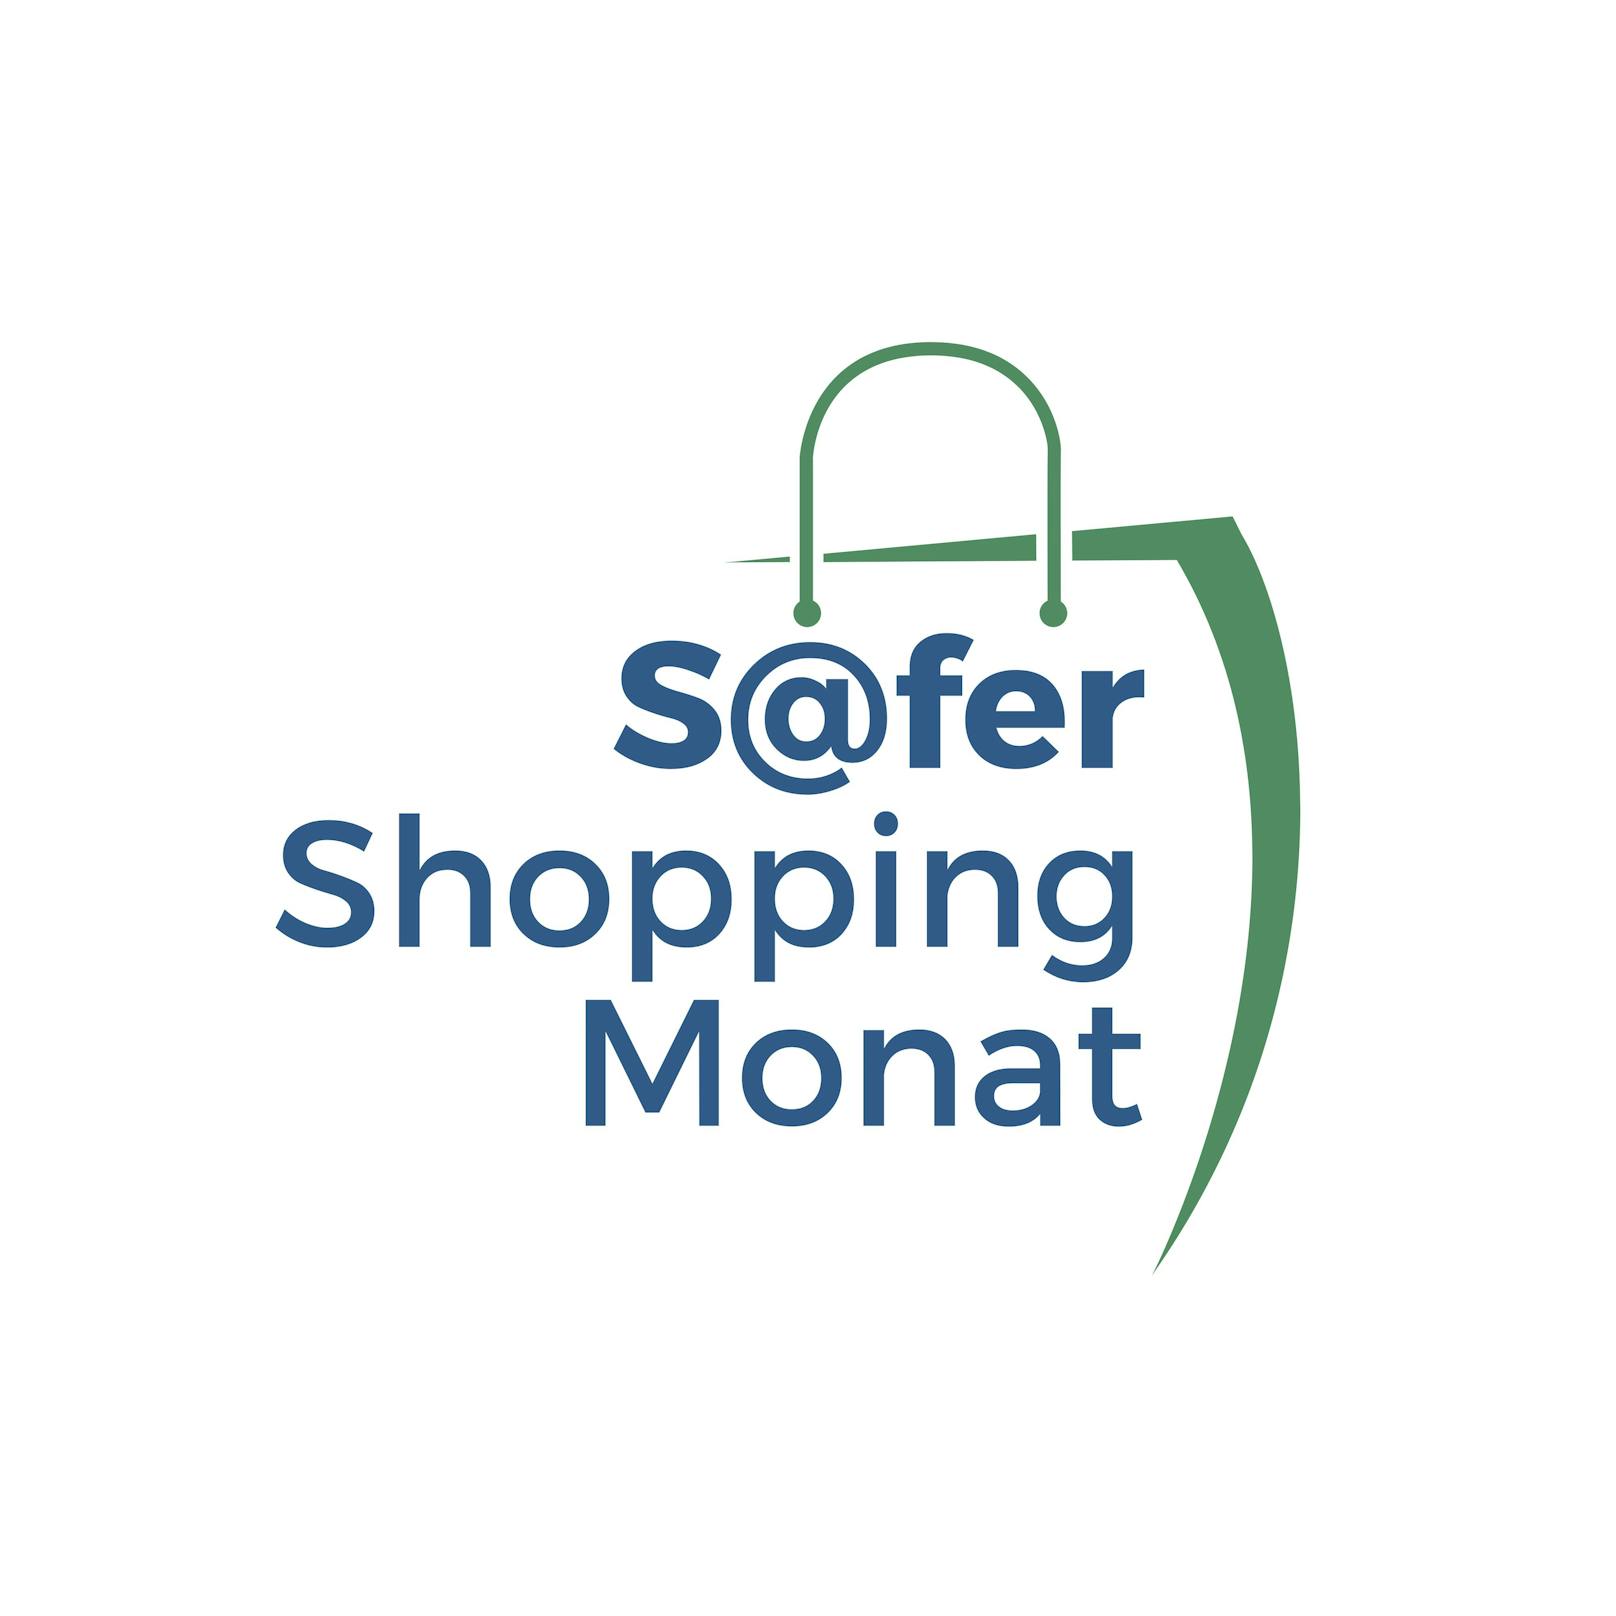 Premiere: Der November wird zum Safer-Shopping-Monat.